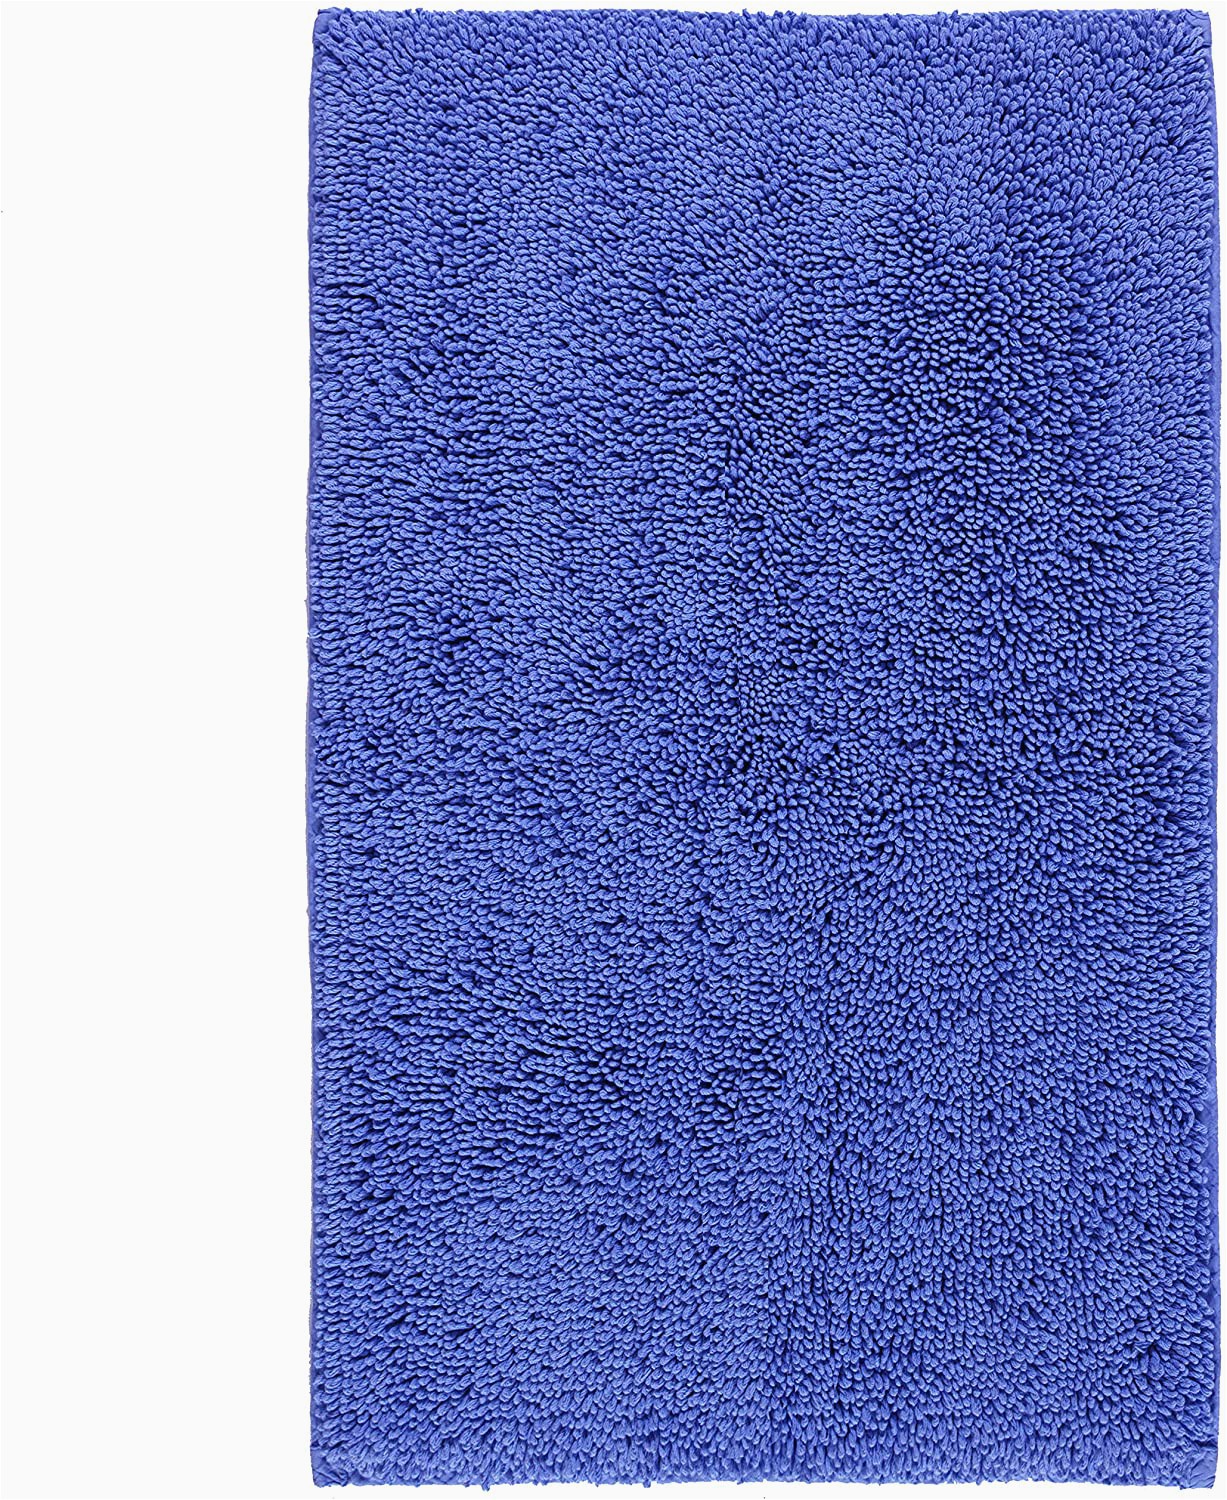 Cobalt Blue Bath Rugs Amazon Mohawk Riverdale Bath Rug 1 9×2 10 Light Lapis